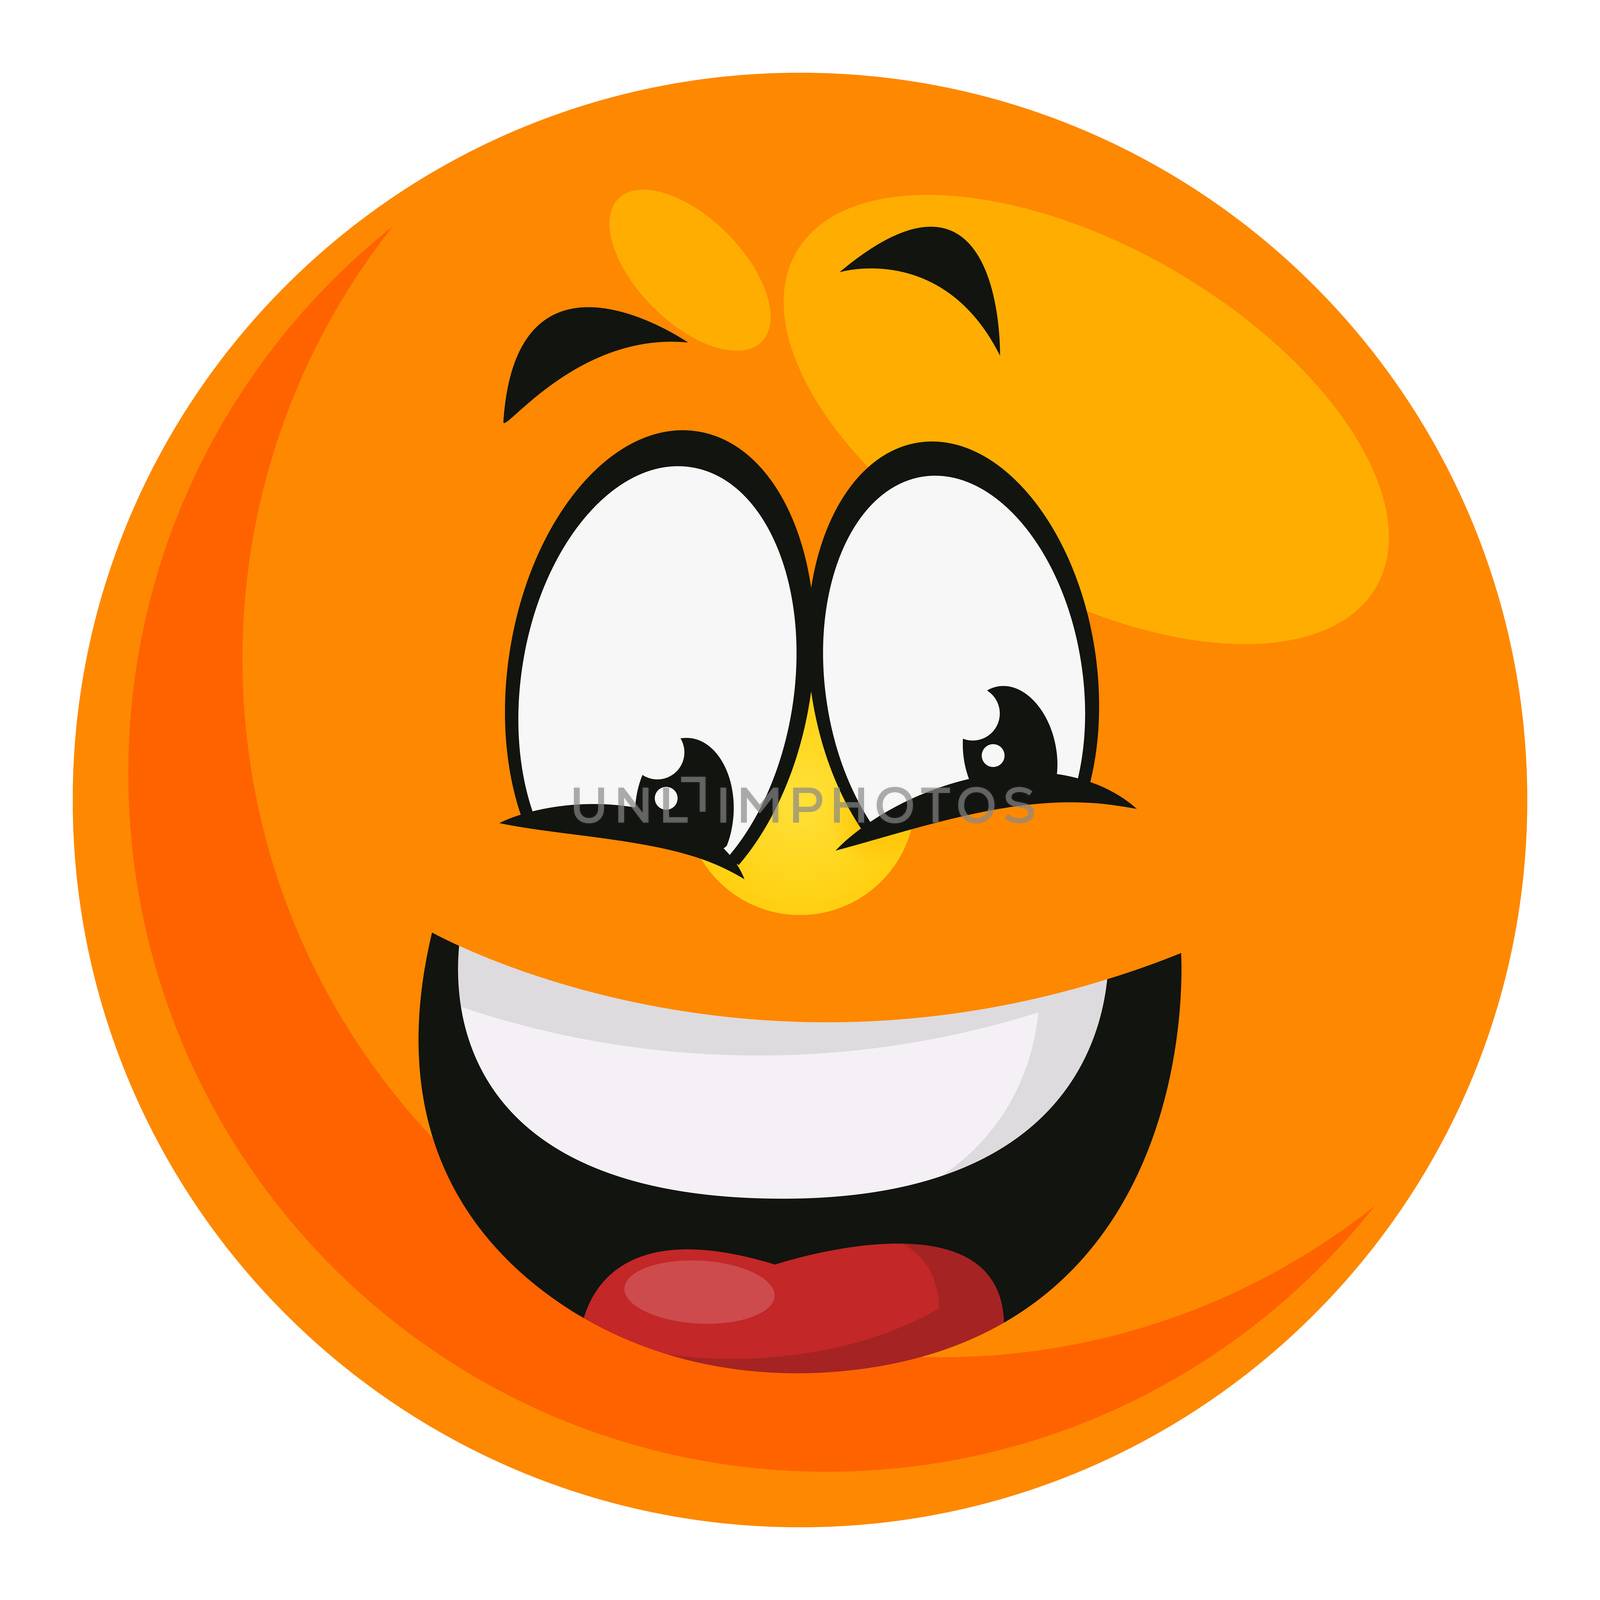 Happy emoji, illustration, vector on white background